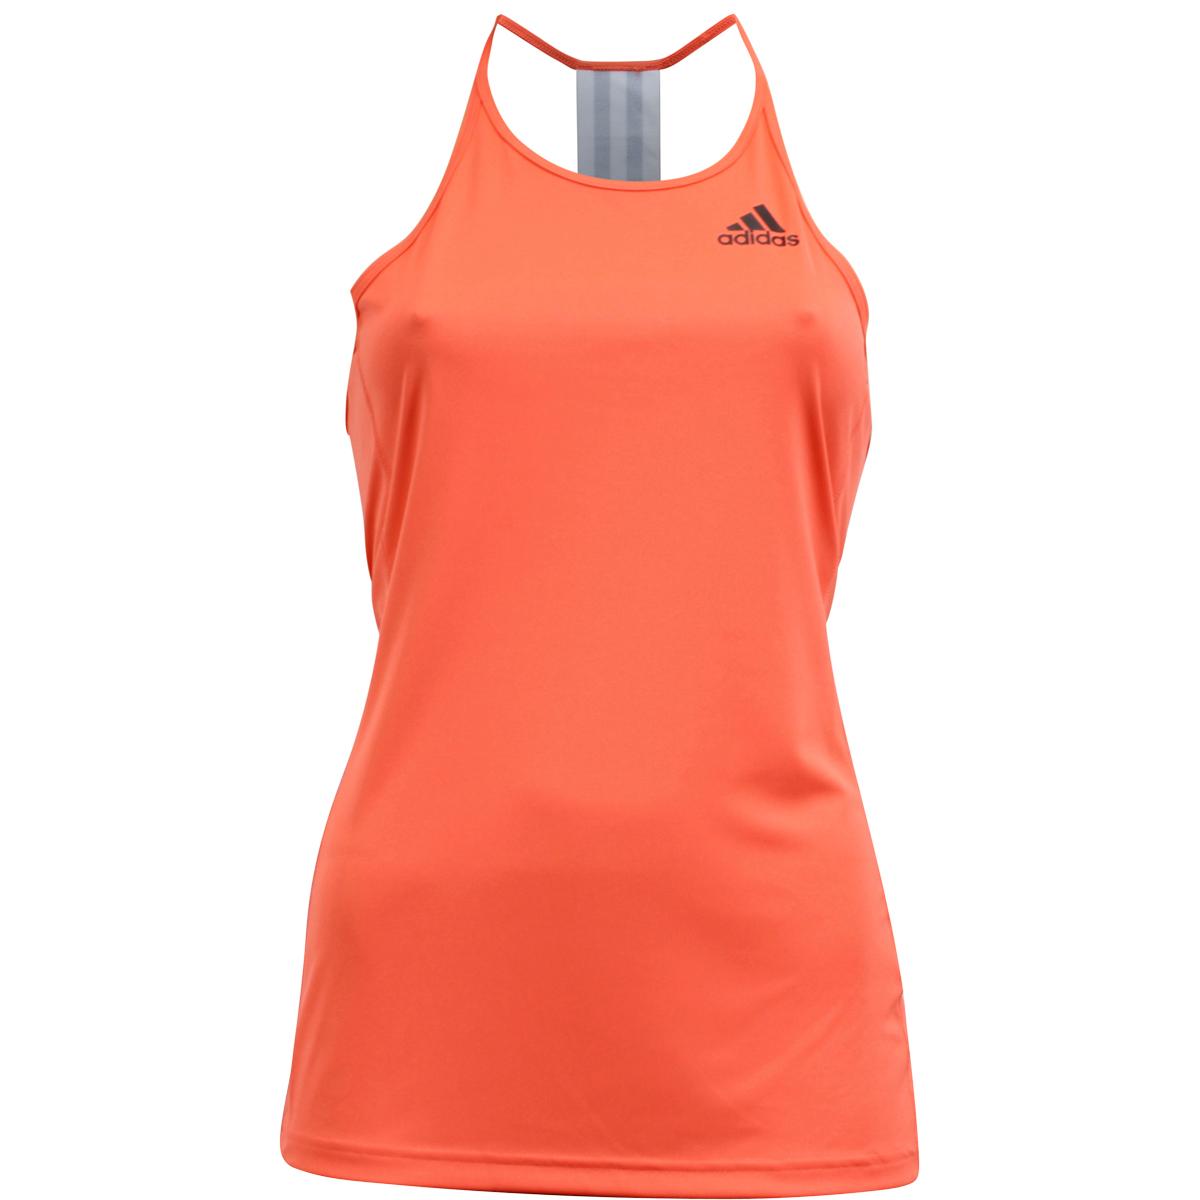 Aanpassen puberteit Tweede leerjaar Adidas Women's Performance Step Up Climalite Tank Top Shirt | JoyLot.com